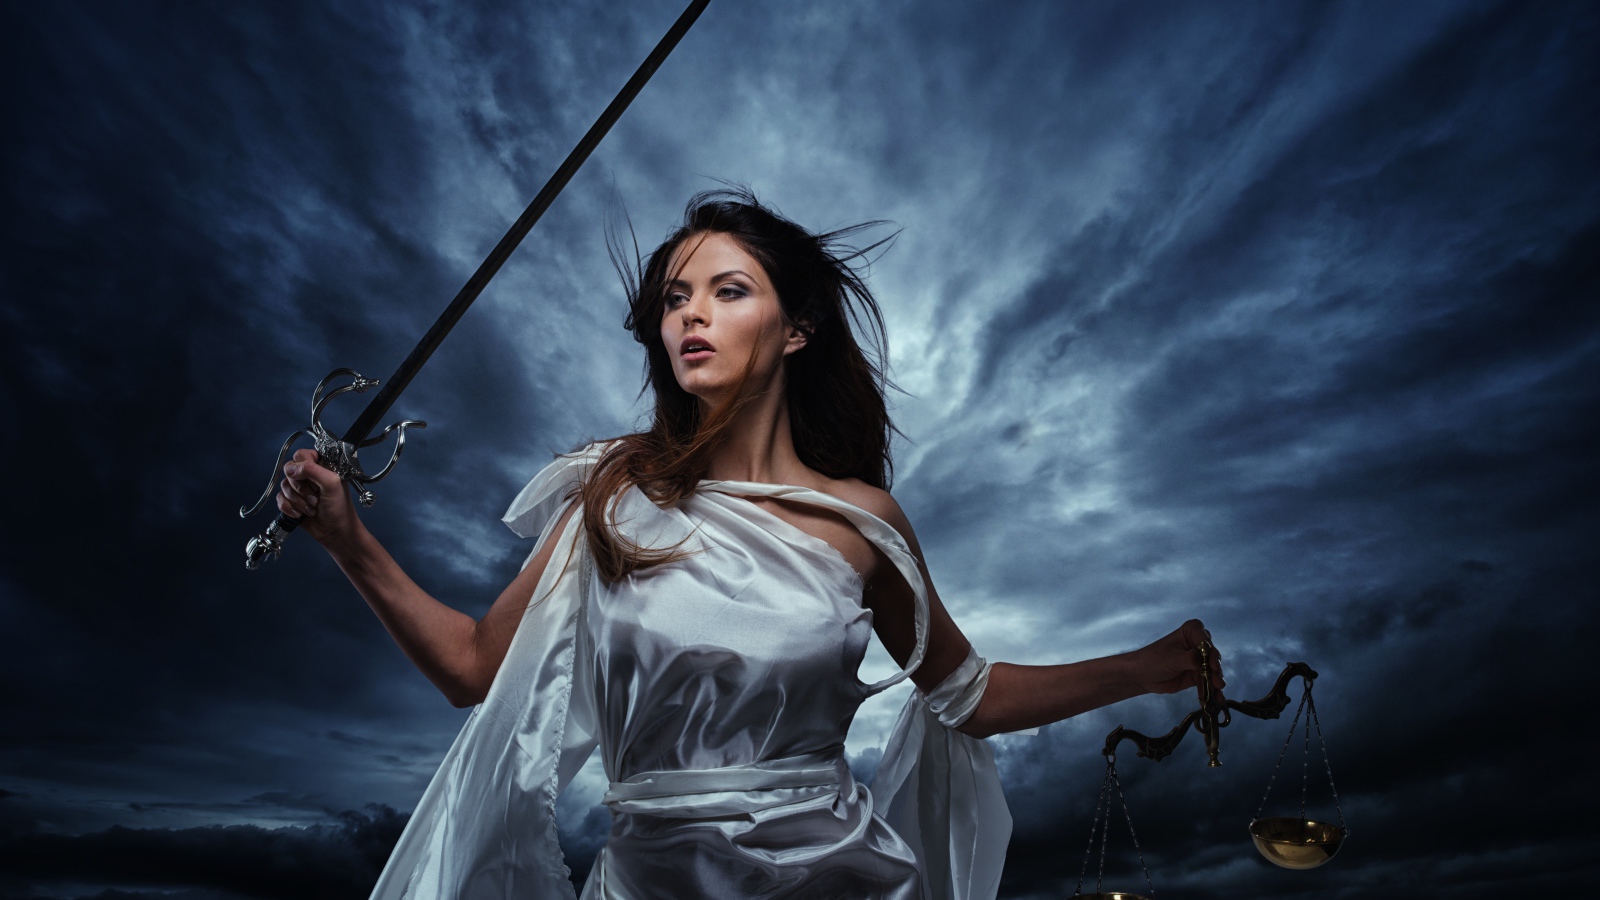 Девушка с мечом и весами в руках на фоне грозового неба, фэнтези